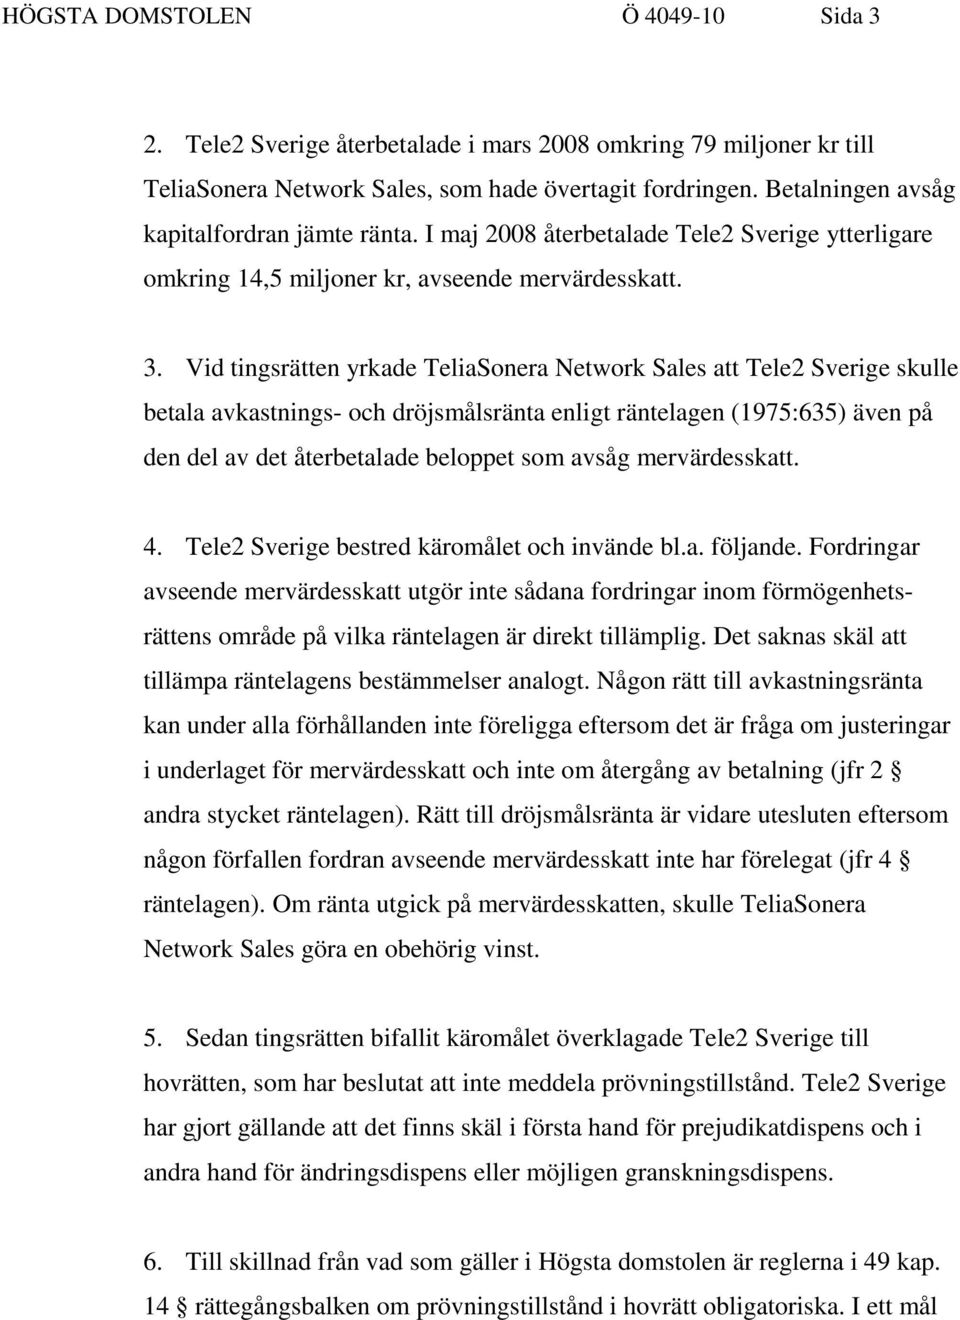 Vid tingsrätten yrkade TeliaSonera Network Sales att Tele2 Sverige skulle betala avkastnings- och dröjsmålsränta enligt räntelagen (1975:635) även på den del av det återbetalade beloppet som avsåg